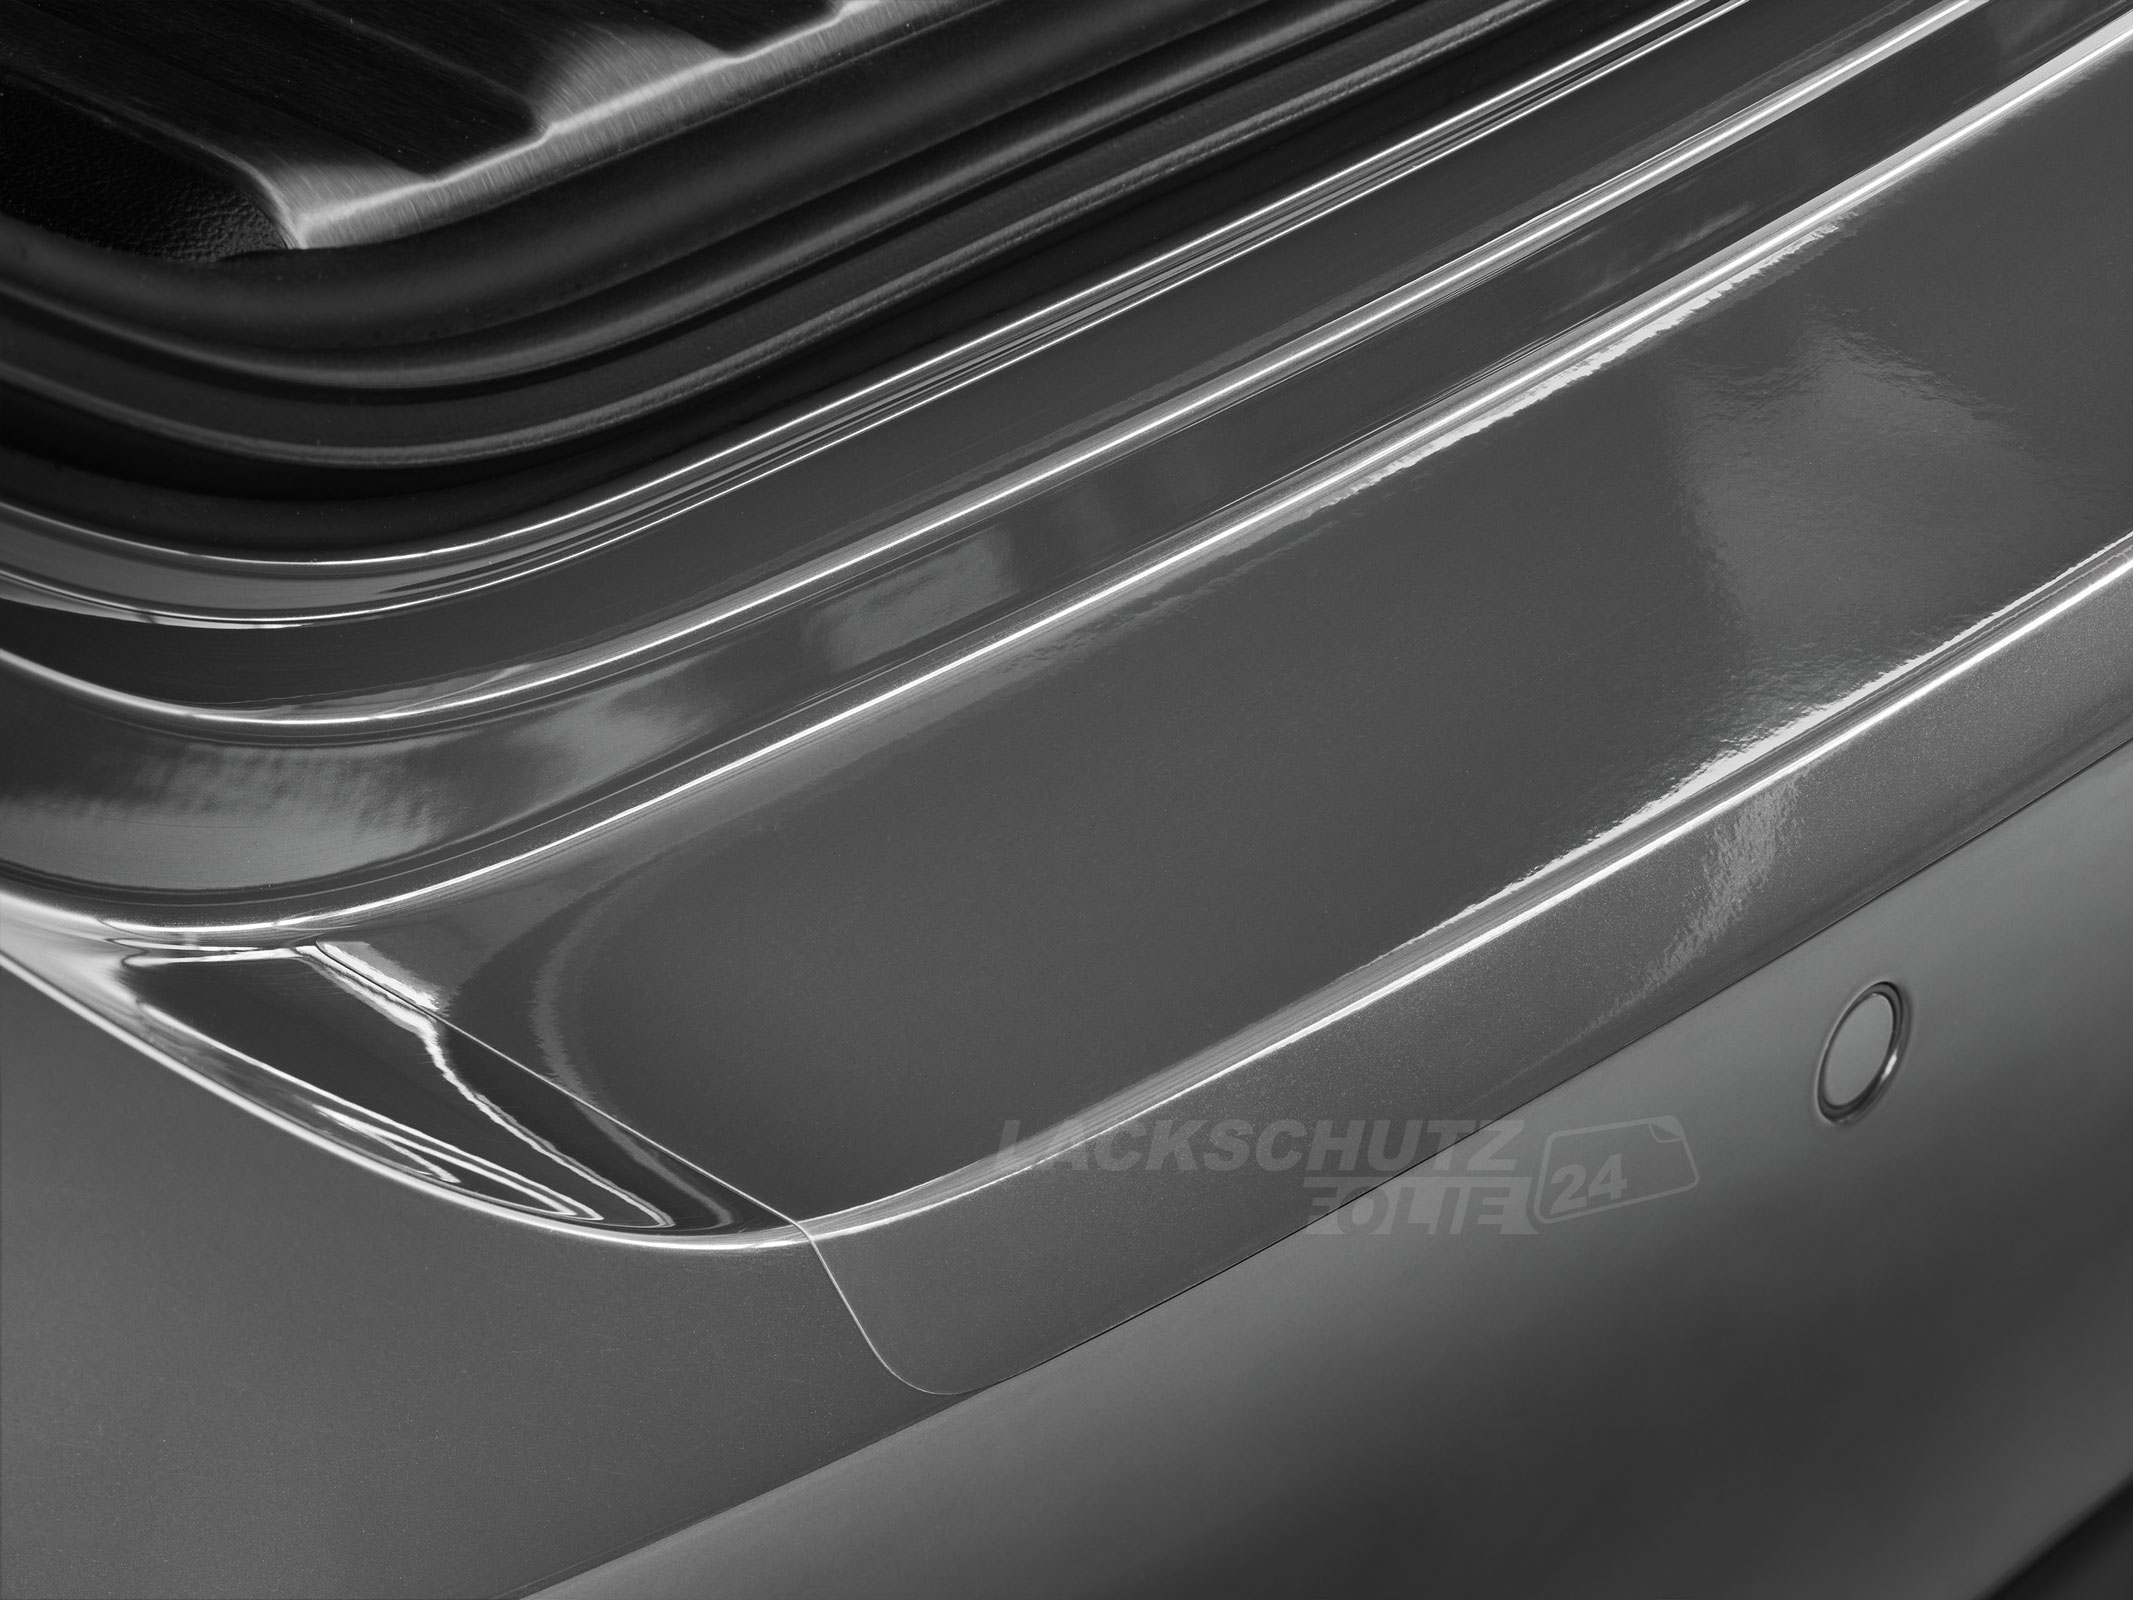 Ladekantenschutzfolie - Transparent Glatt Hochglänzend 240 µm stark für VW / Volkswagen Golf Variant (Kombi) 7, Typ AU, IQ-Drive, ab BJ 01/2019